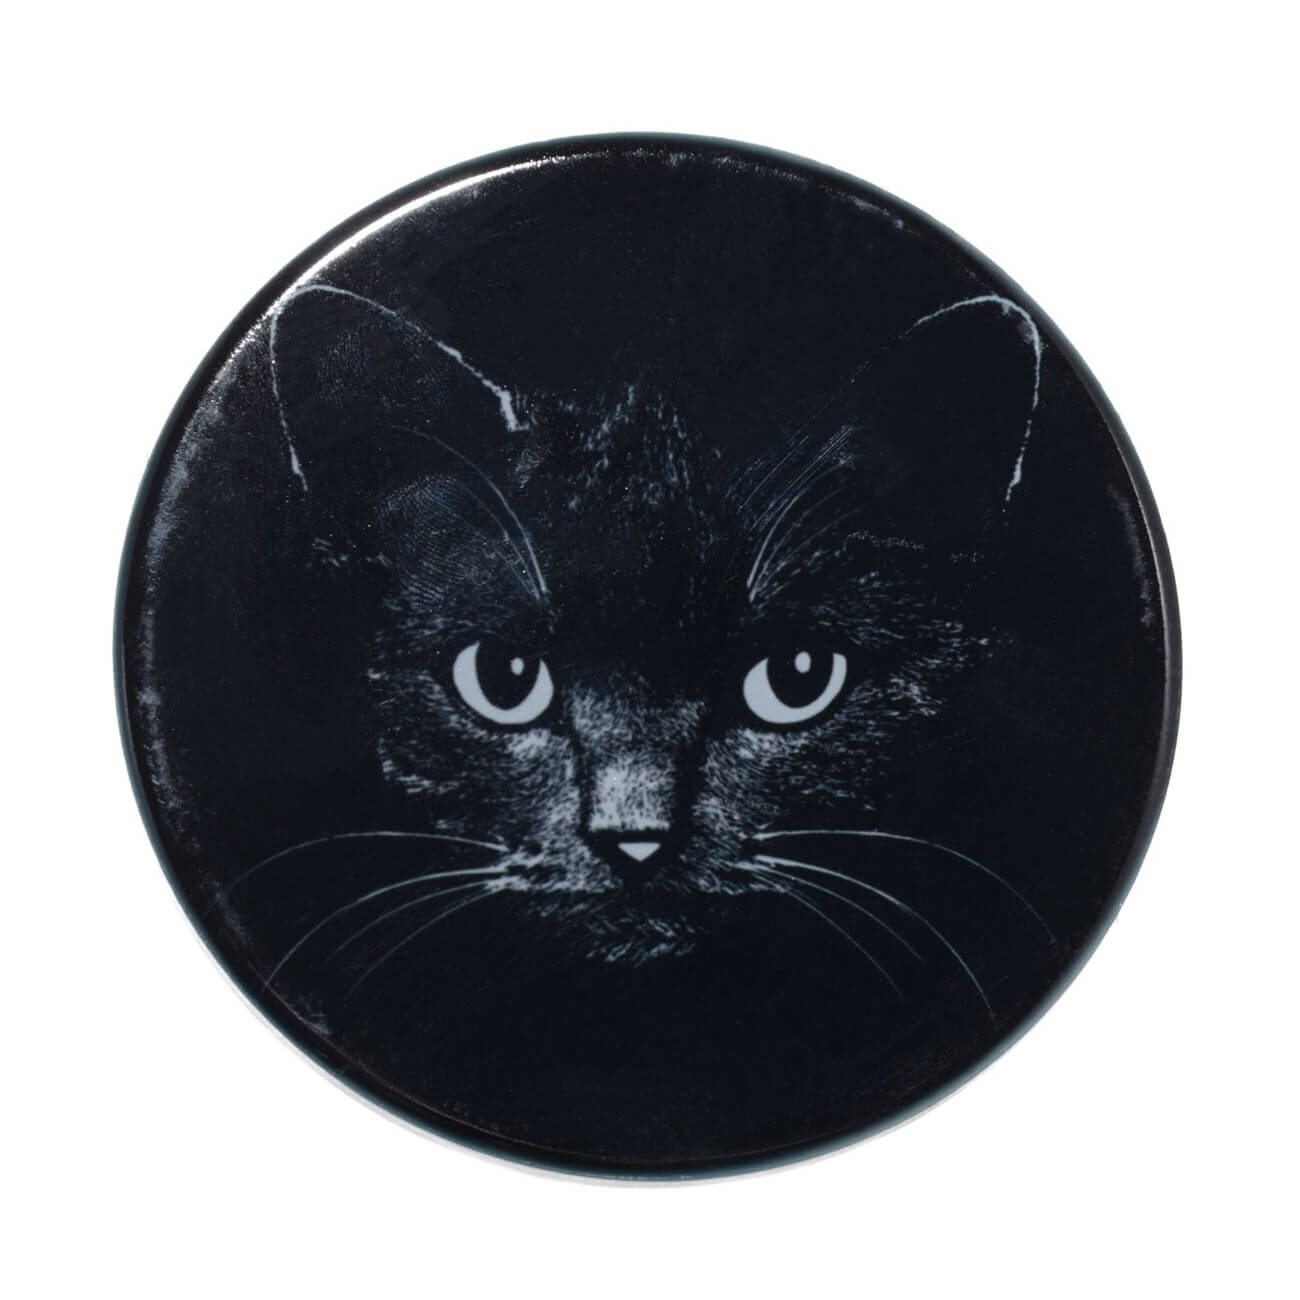 Подставка под кружку, 11x11 см, керамика/пробка, круглая, черная, Ночной кот, Cat night подставка под тарелки доляна 17×11 см хром